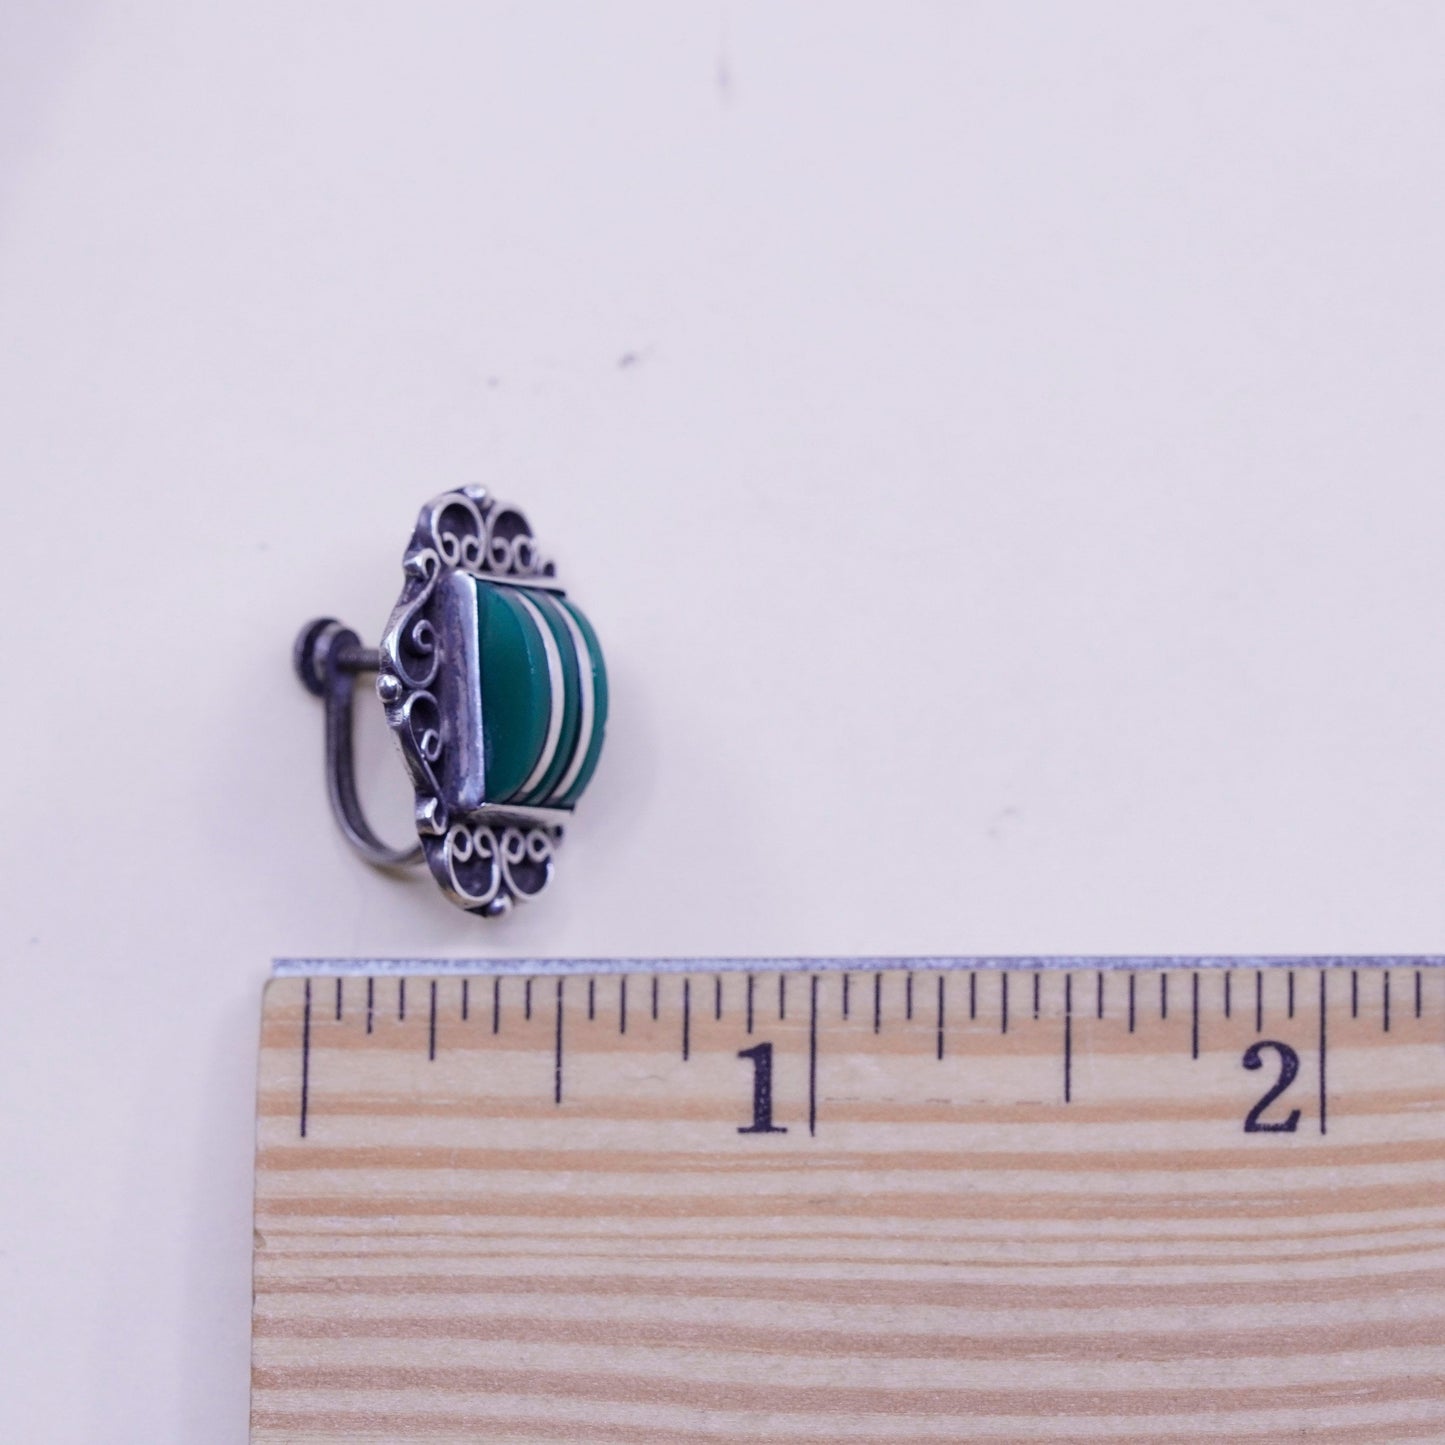 Vintage sterling 925 silver handmade screw back earrings with jade inlay